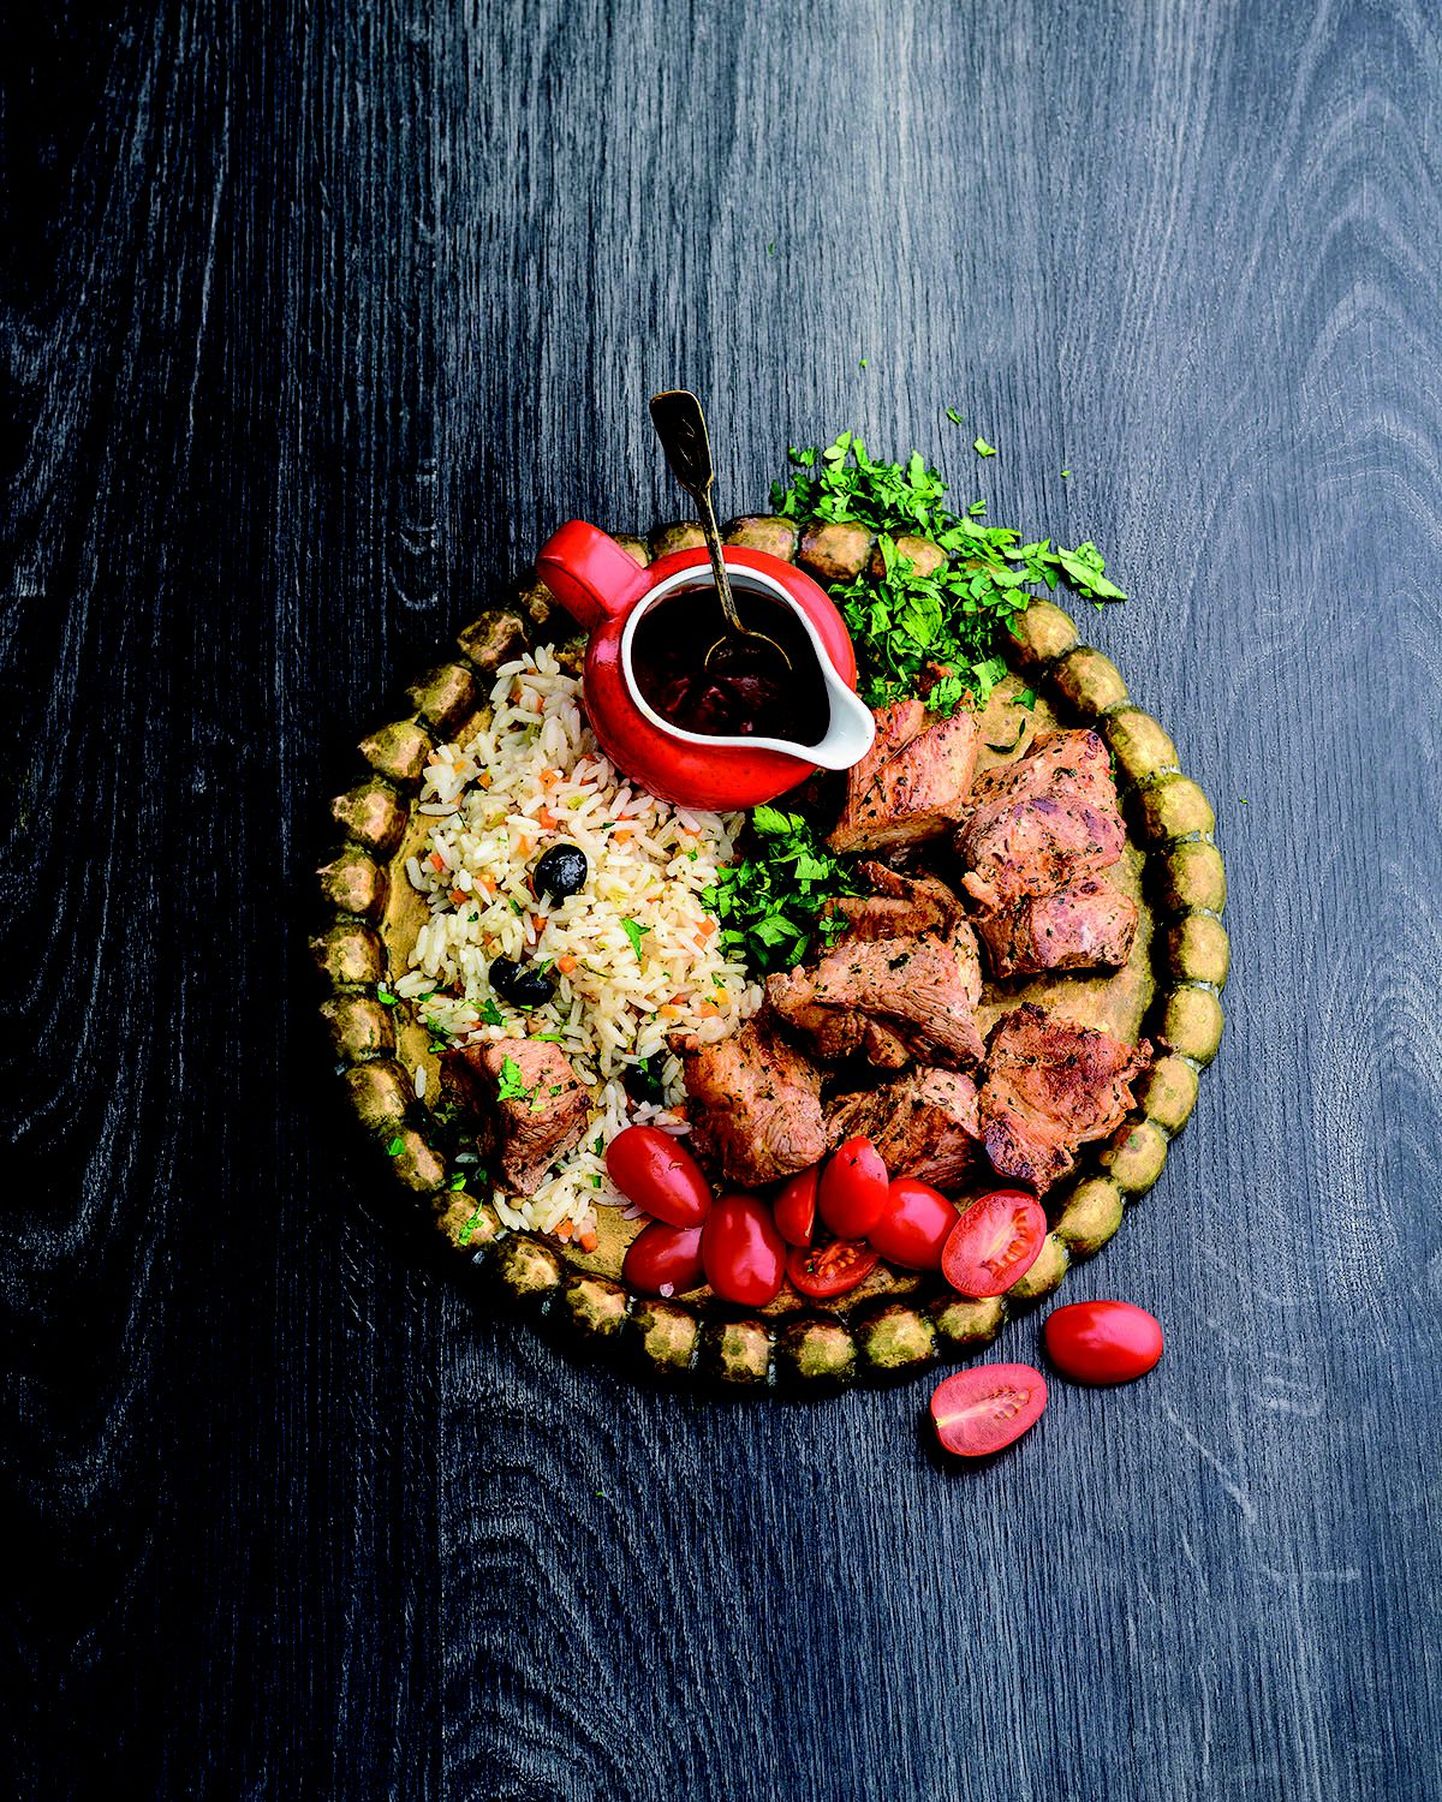 Шашлык по-узбекски от Rannarootsi – ароматное сочное мясо, вкус которого не убит маринадом.